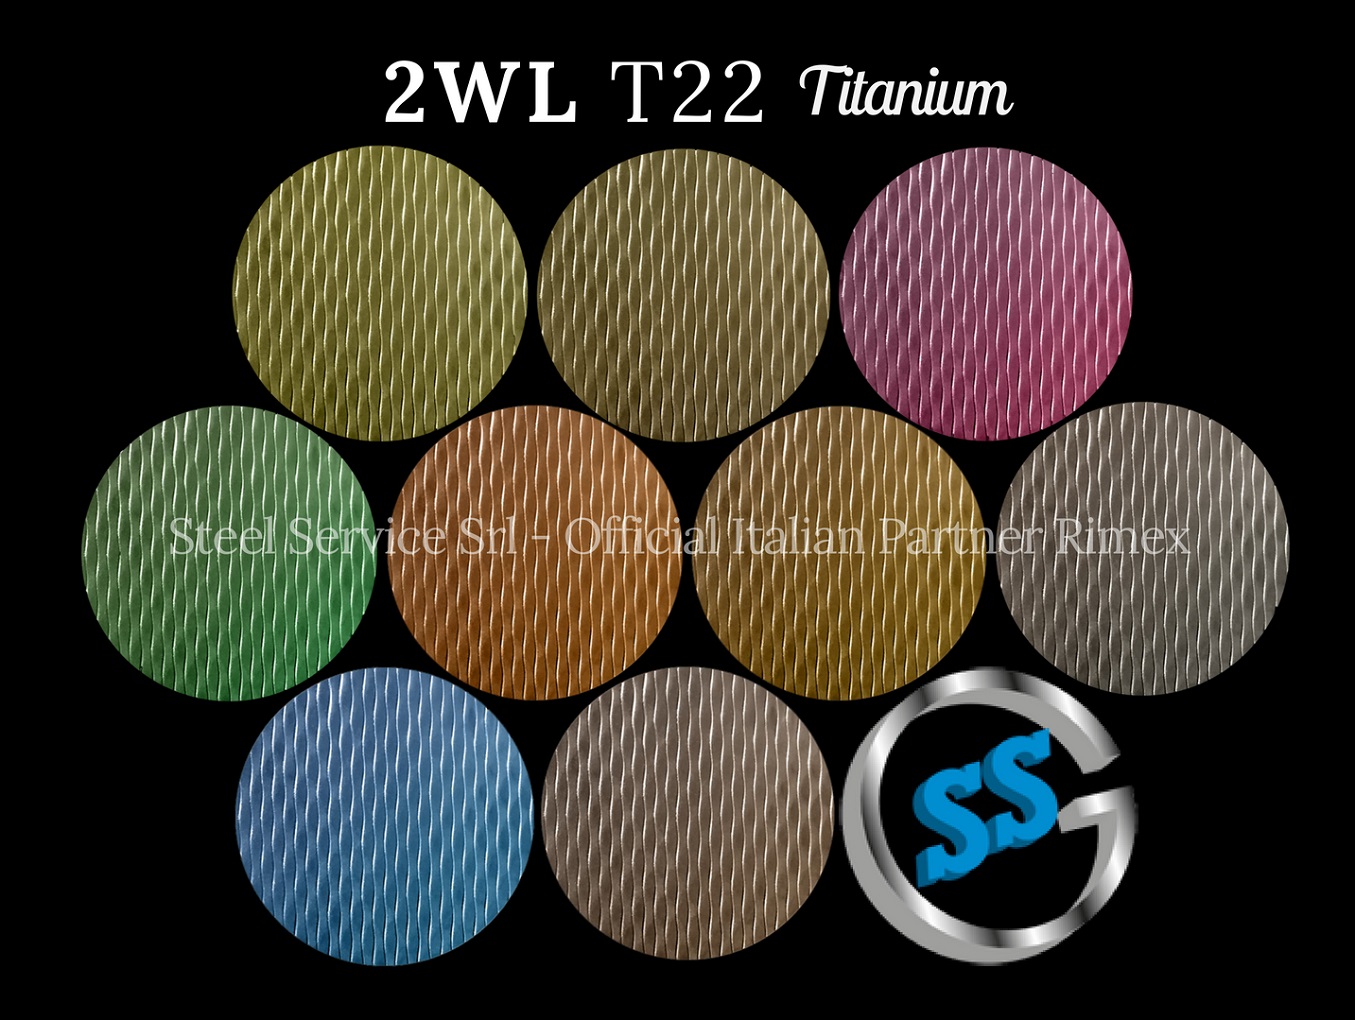 Lamiere bugnate 2WL colorate, Palette varianti colorate inox T22 Titanium delle lamiere inox 2WL, inox rigidizzato 2WL, inox bugnato 2WL